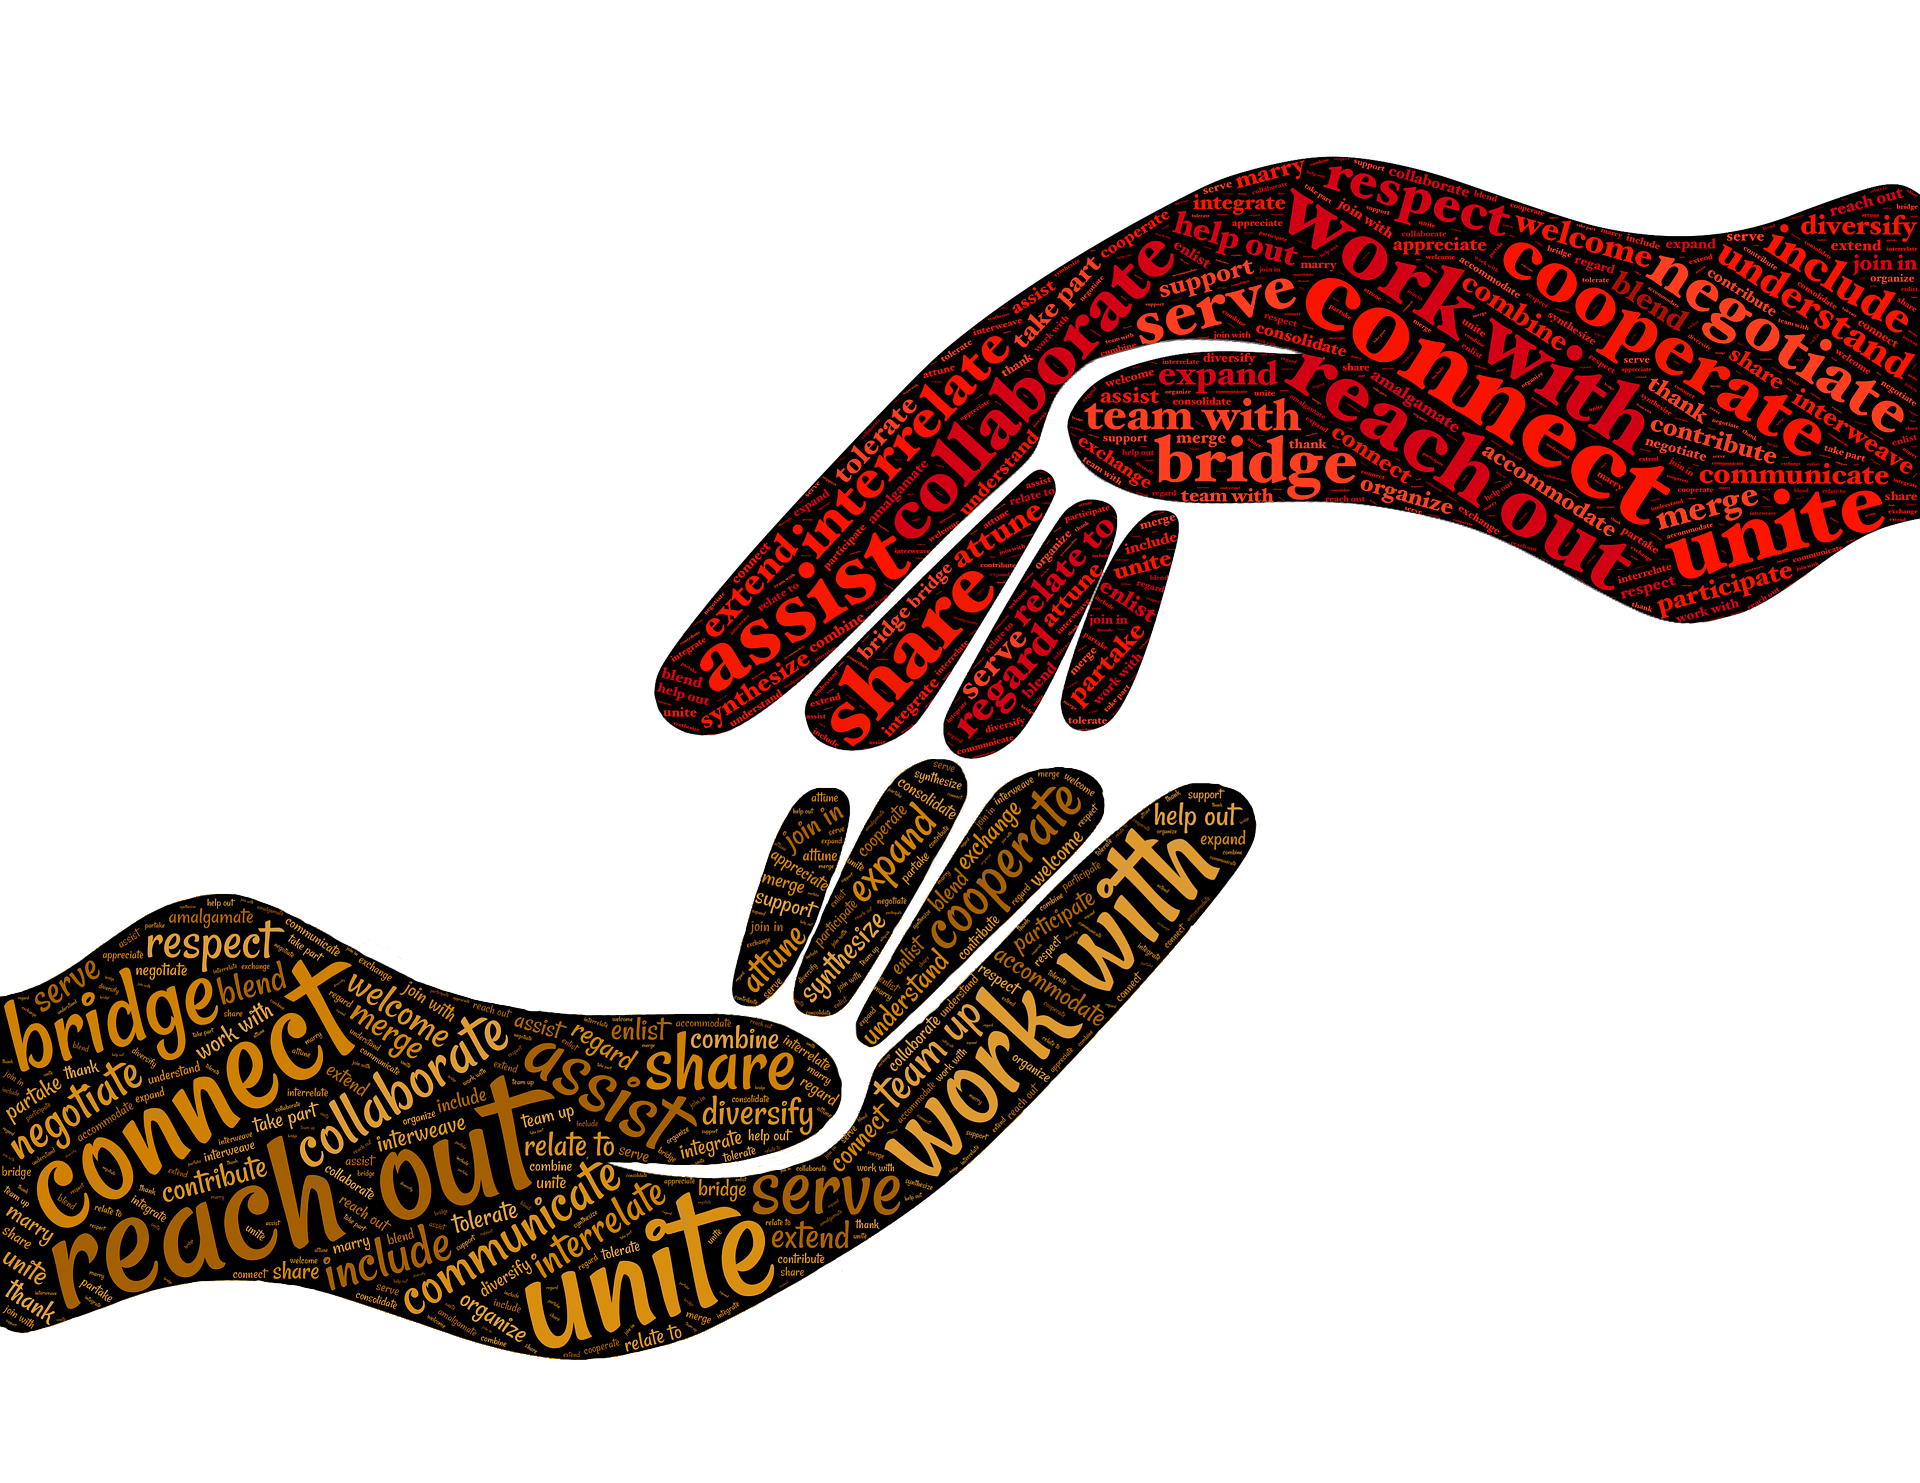 Grafik: Zwei zueinander gewandte Hände, mit tag-cloud "cooperate" gefüllt, Bildnachweis: johnhain auf pixabay, https://pixabay.com/de/illustrations/kooperieren-zusammenarbeiten-2924261/